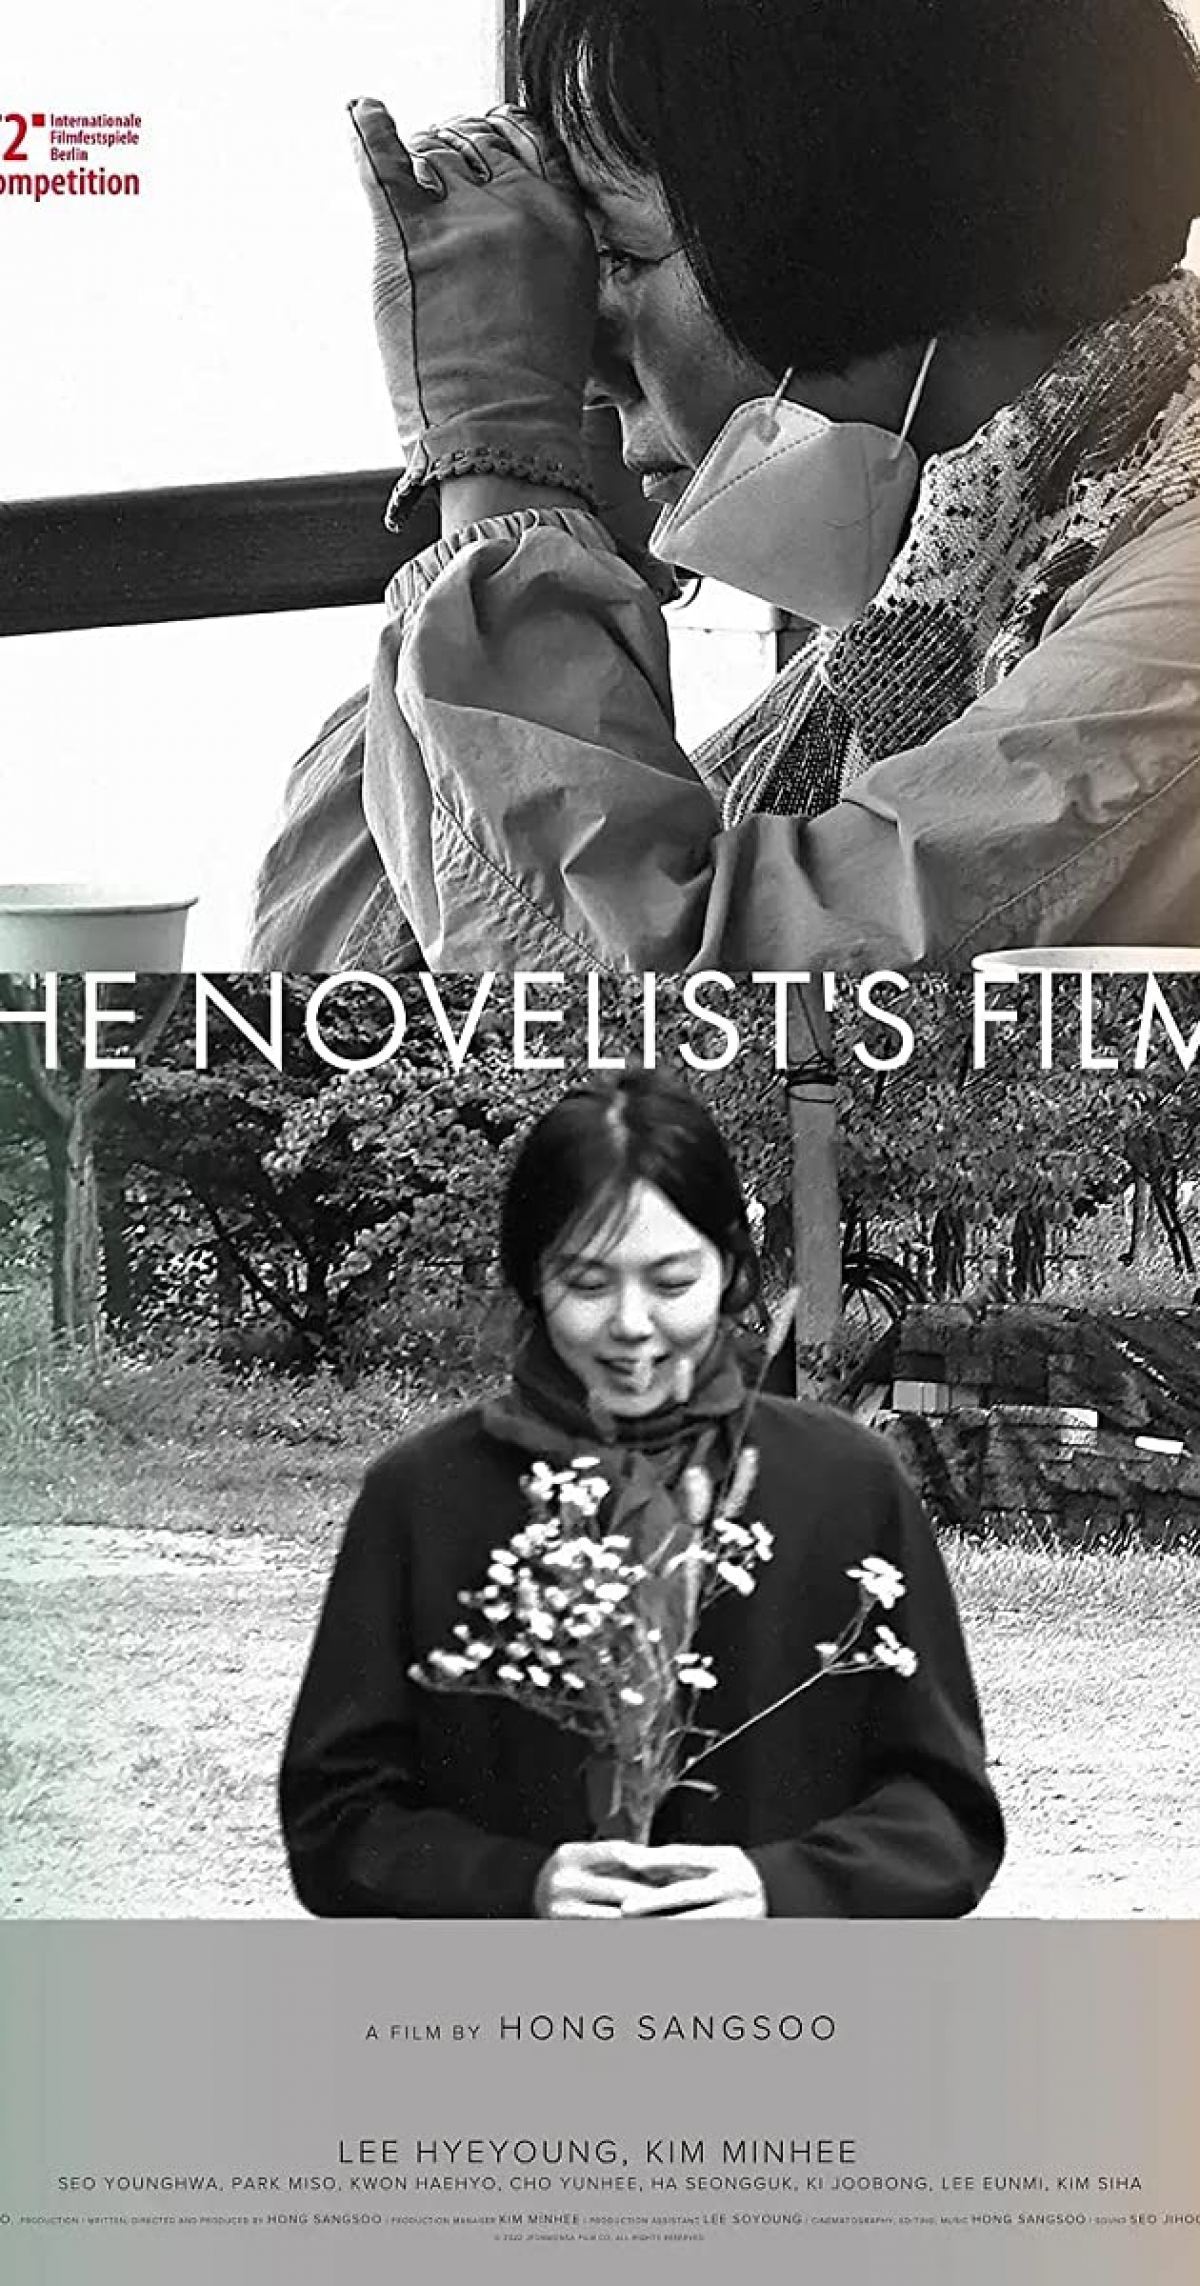 Điện ảnh Hàn Quốc tiếp tục được ghi nhận với Giải Gấu Bạc - Giải thưởng Lớn của Ban giám khảo Berlinale. Ảnh: BTC